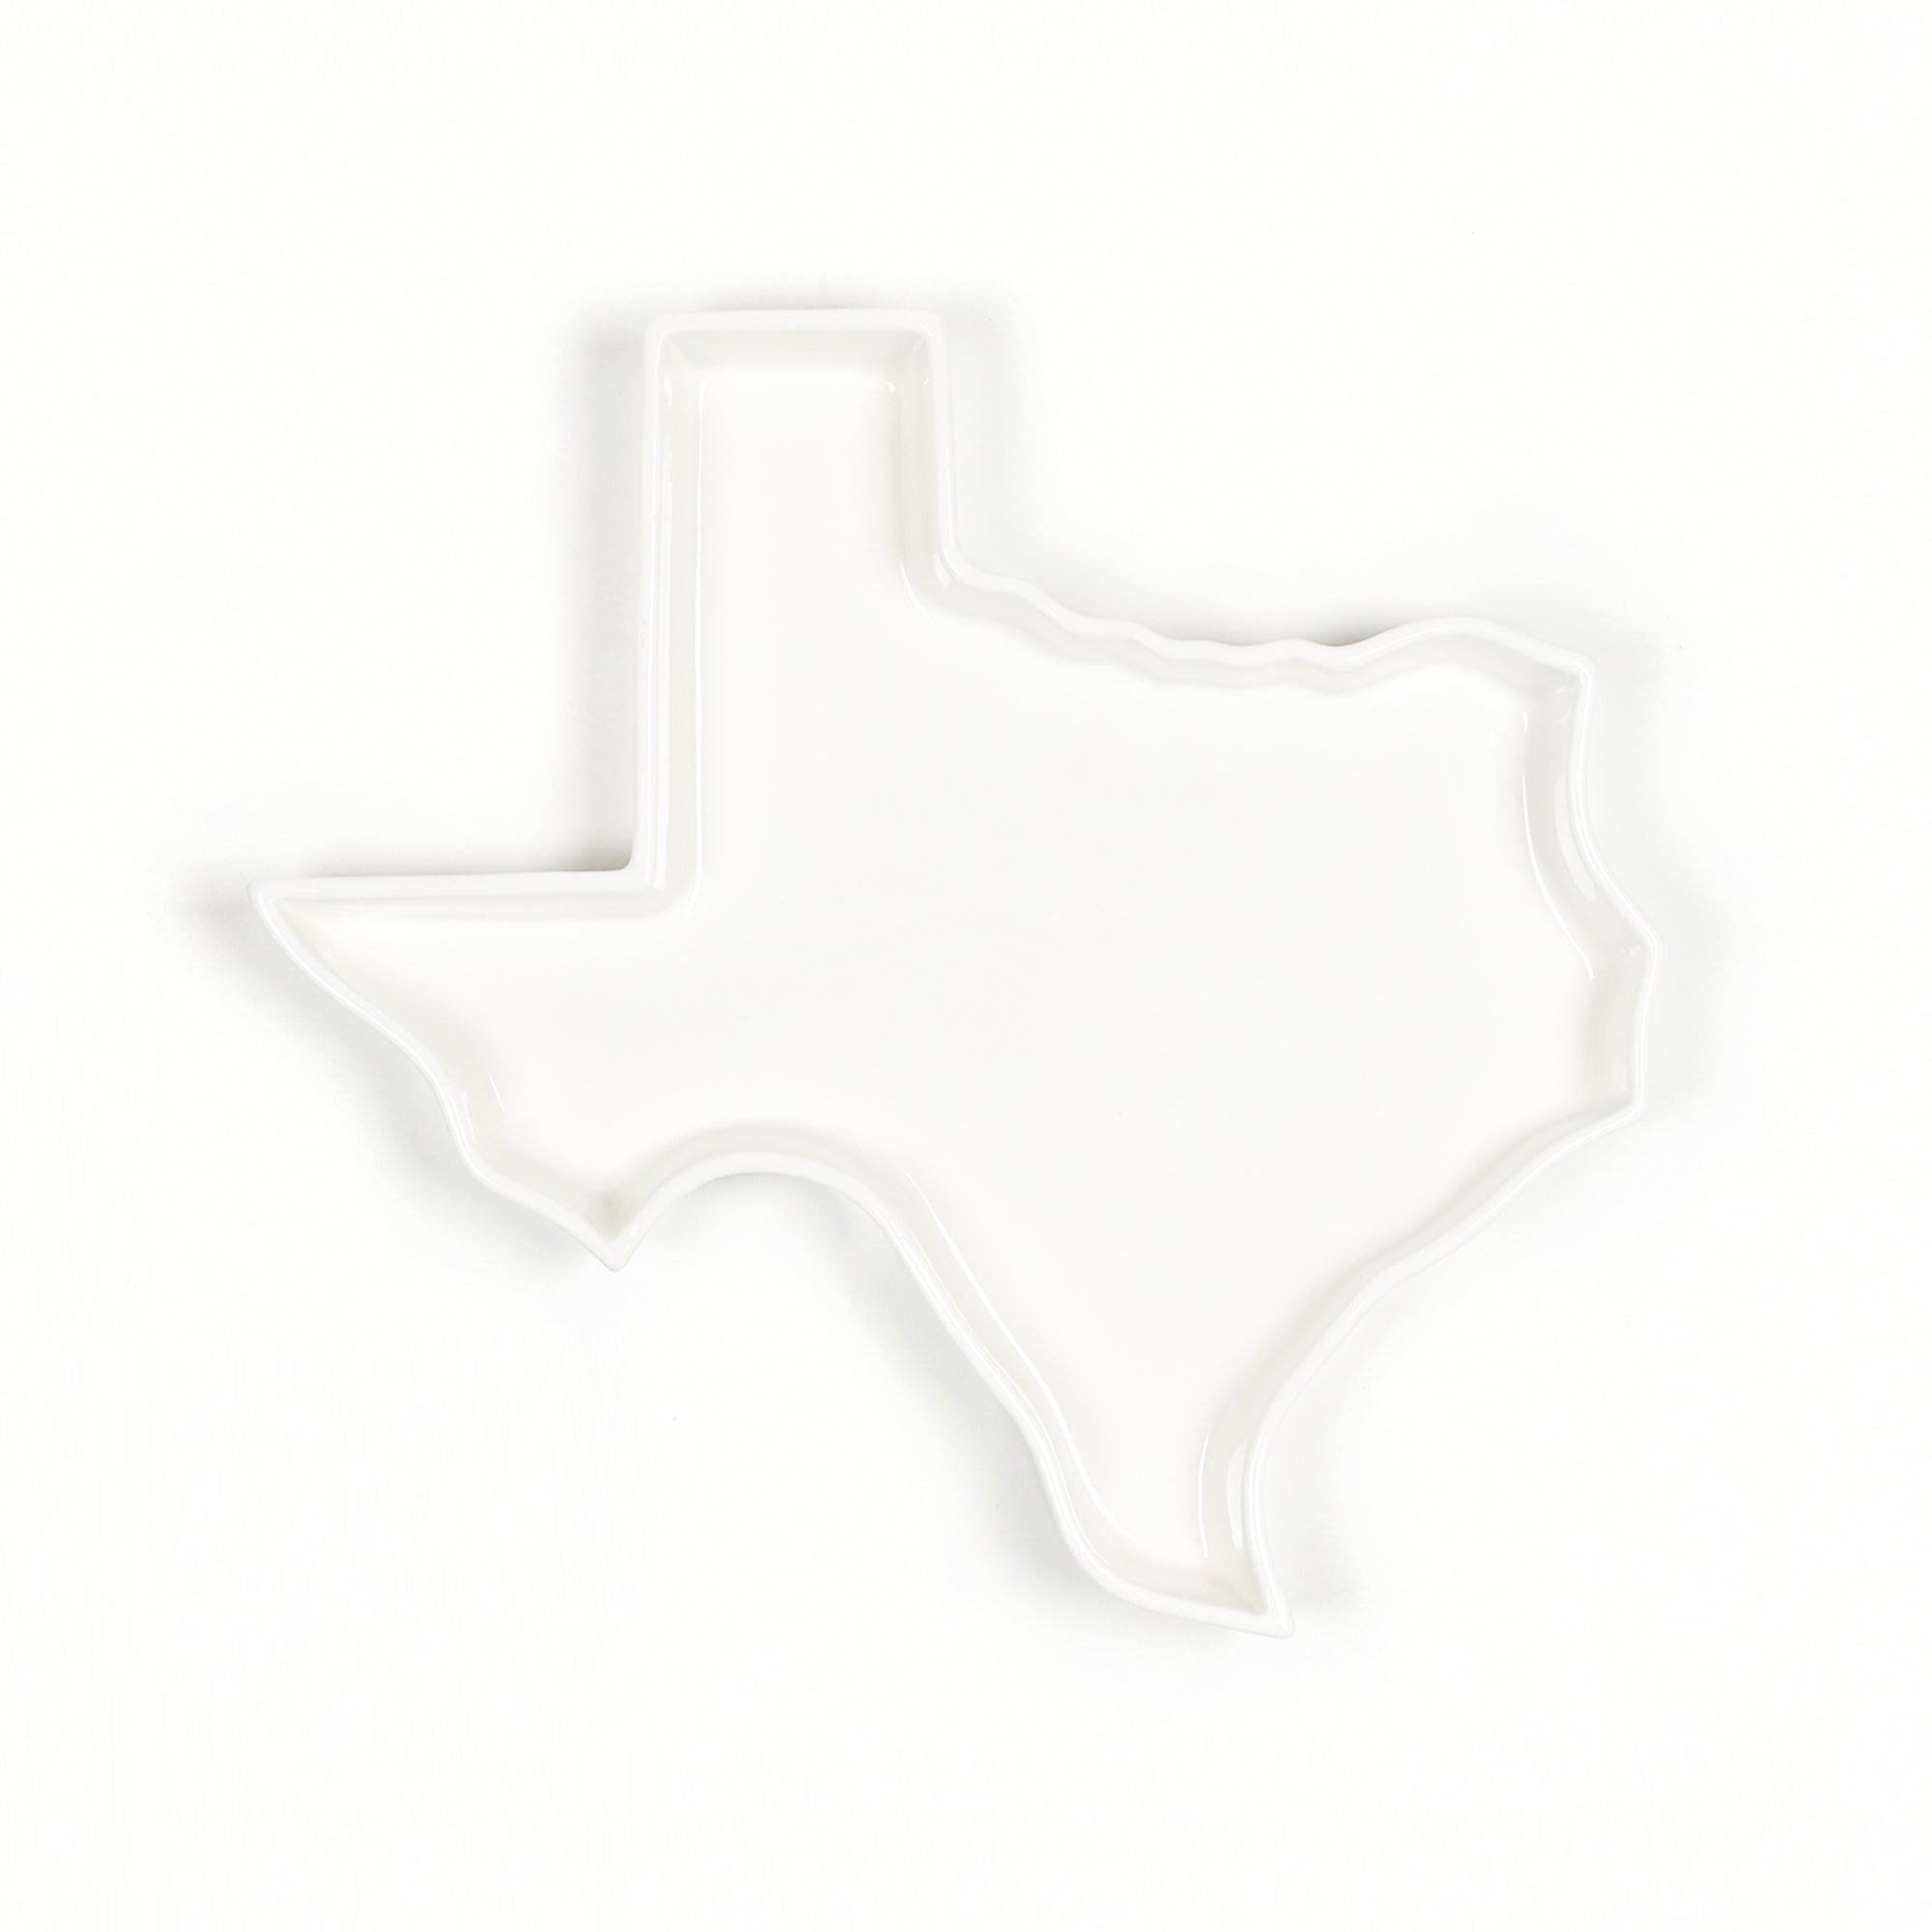 Texas state plate white glossy ceramics. Texas baking dish. Texas baking tray. Texas appetizer dish. Texas cheese plate. TX gift. TX cooking gift. TX baking gift. Texas kitchen gift.